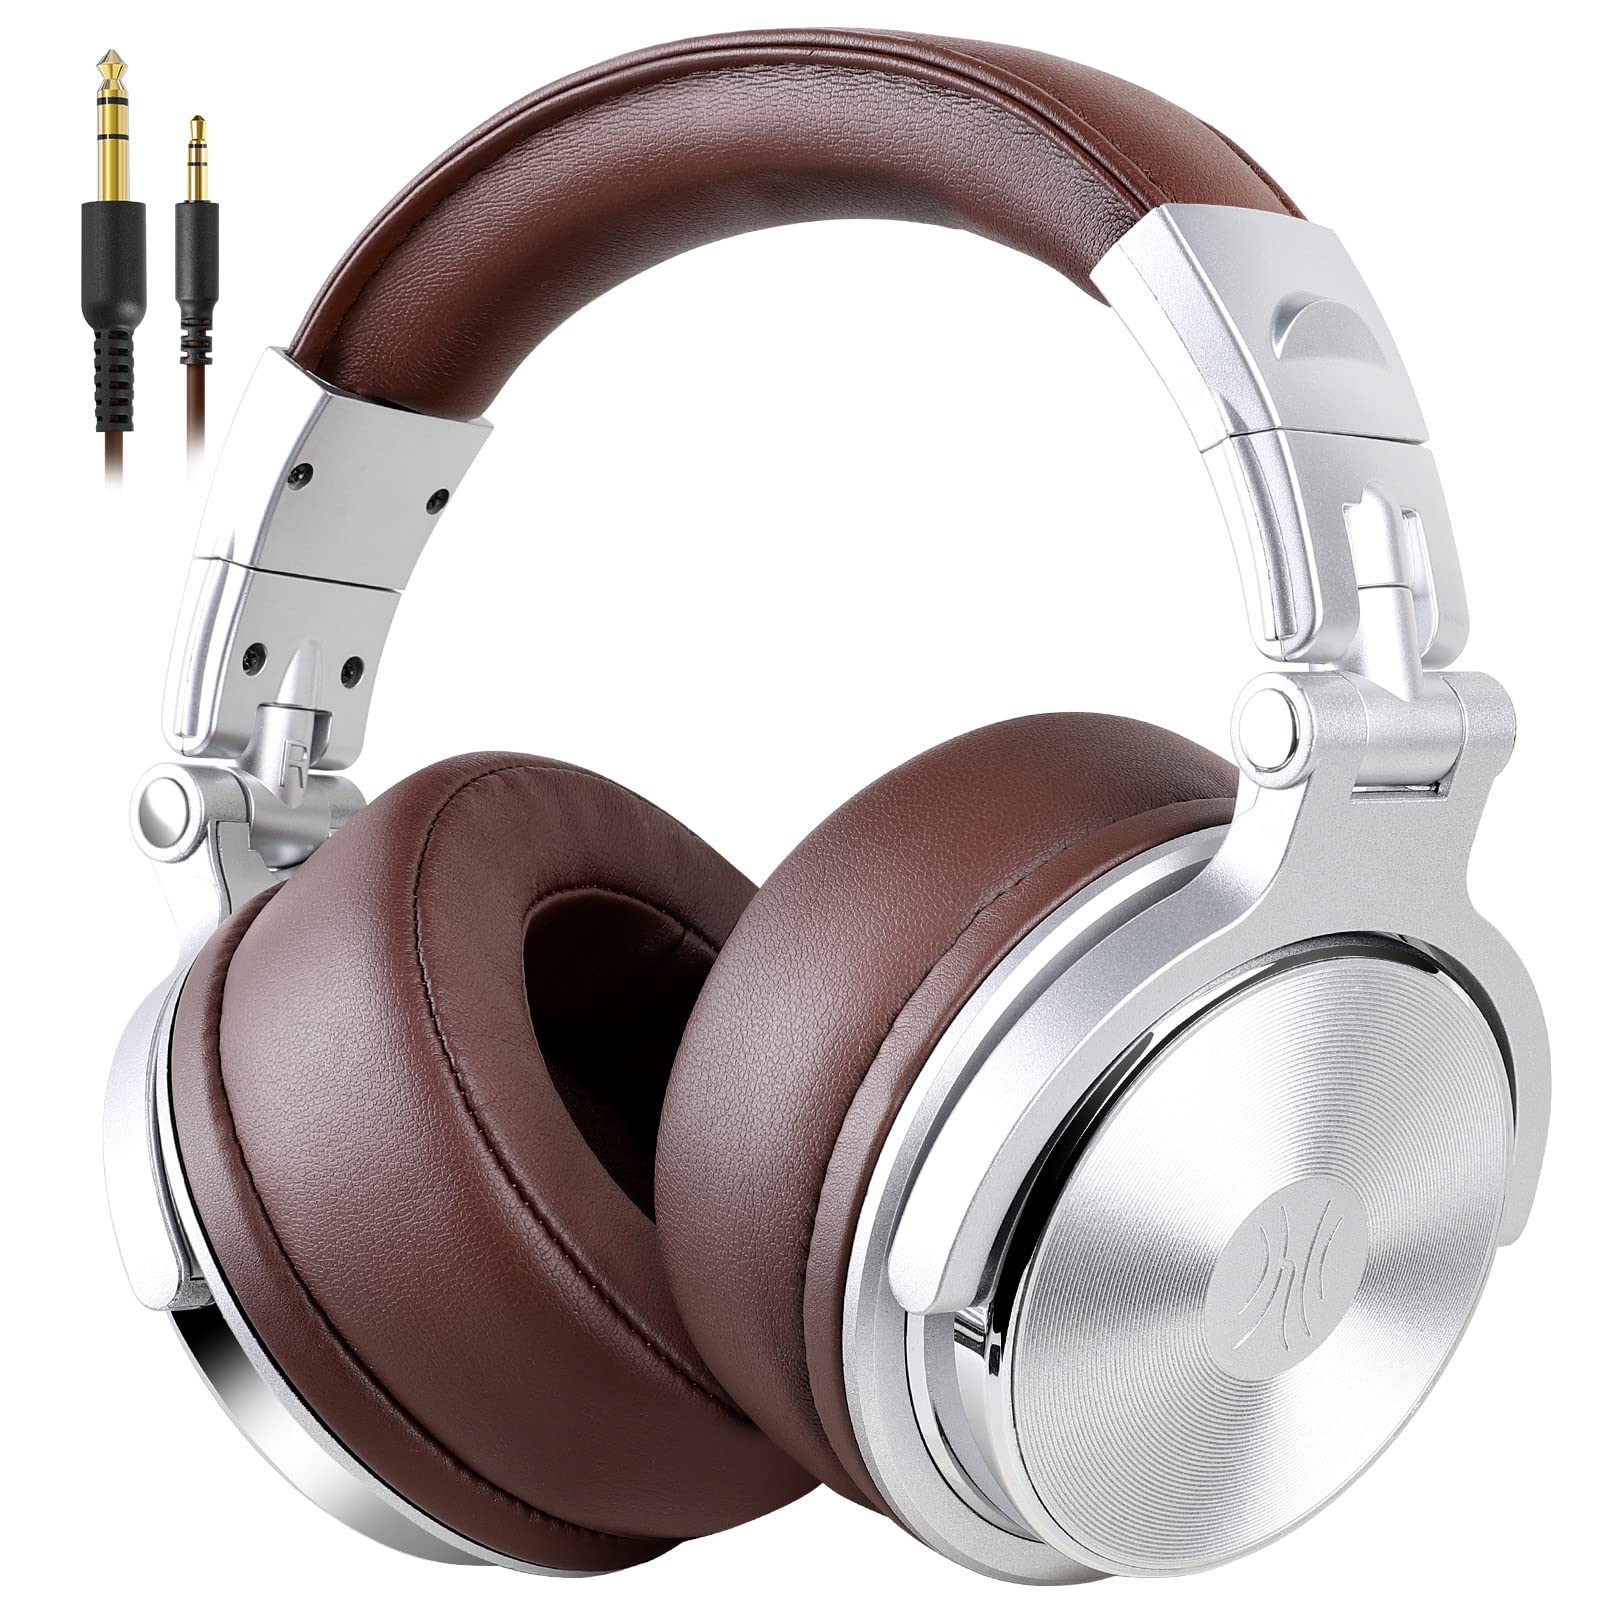  OneOdio 包耳式耳机、带 50 毫米驱动器的有线高级立体声耳机、带蛋白质耳罩的可折叠舒适耳机和用于录制监控播客 PC 电视的共享端口 - 带麦克风（银色）...